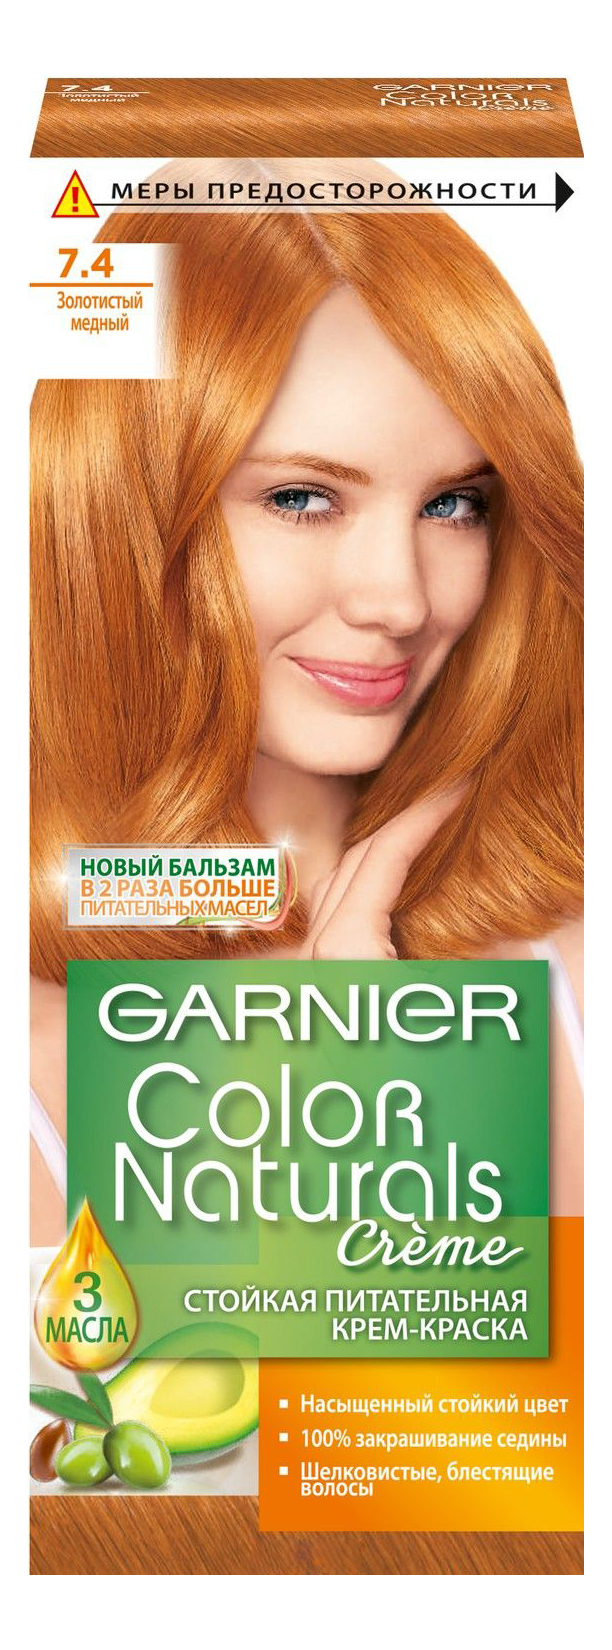 Золотисто-русый цвет волос: варианты оттенков